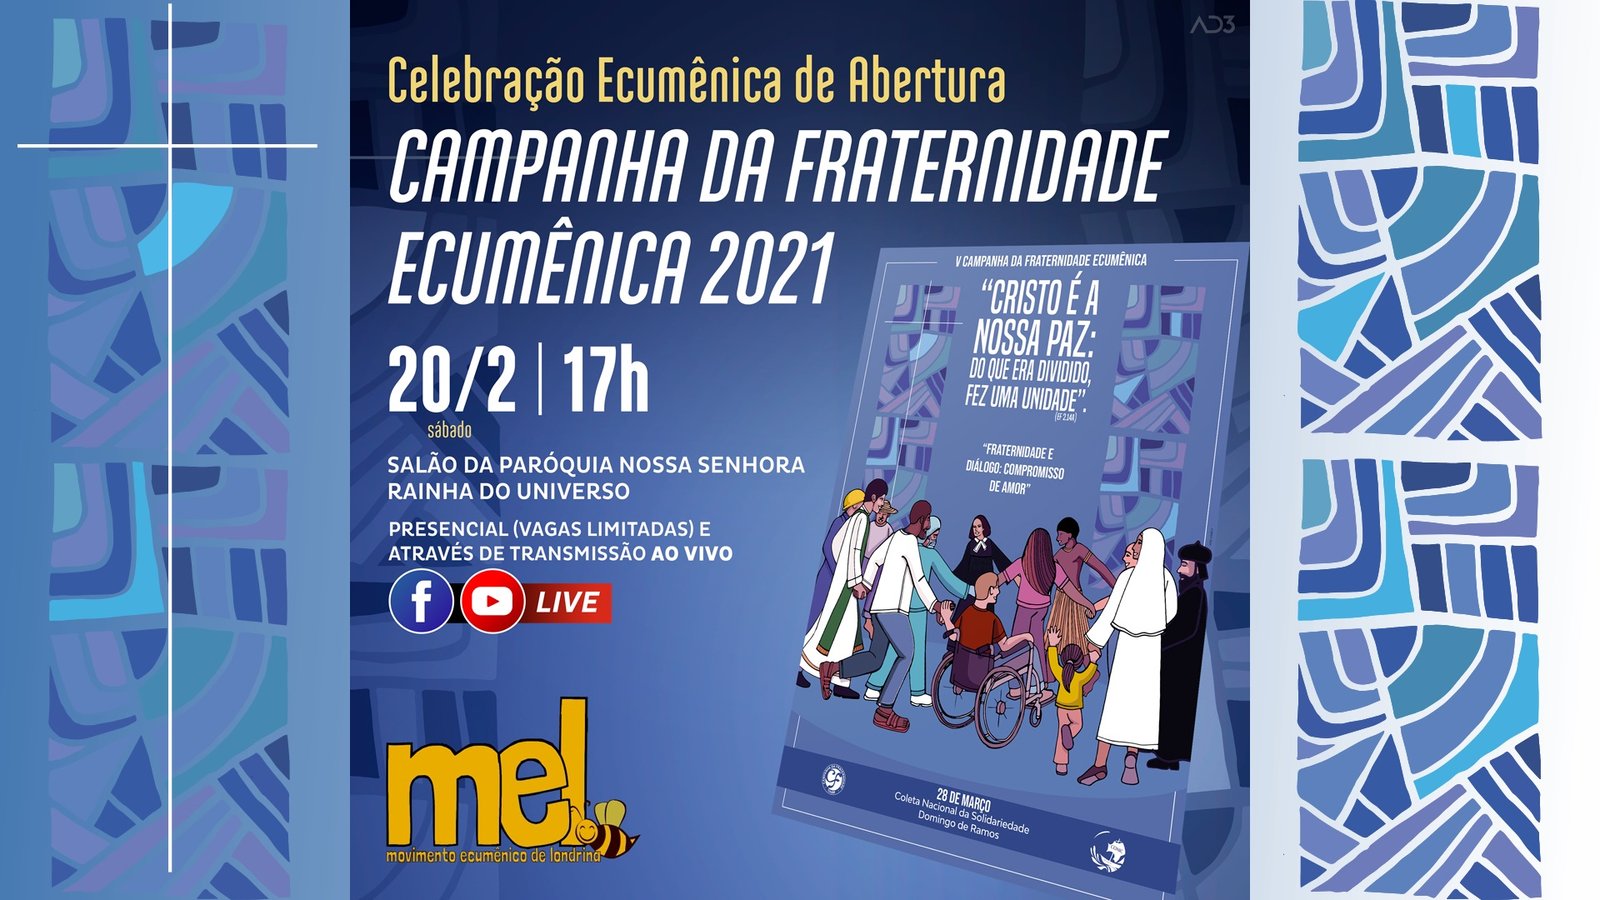 Celebração Ecumênica de abertura da Campanha da Fraternidade 2021